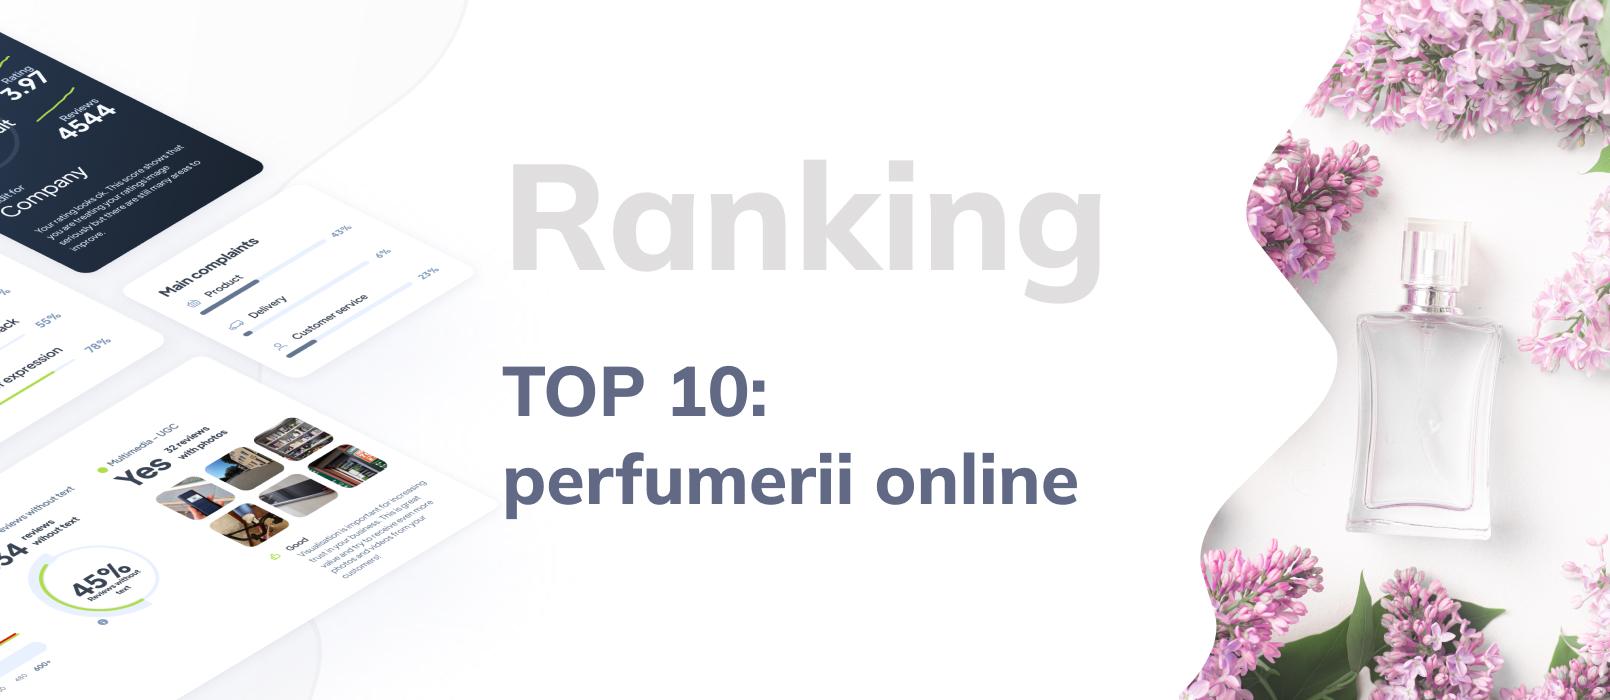 Ranking TOP 10 perfumerii online, czyli najlepsze sklepy internetowe z perfumami